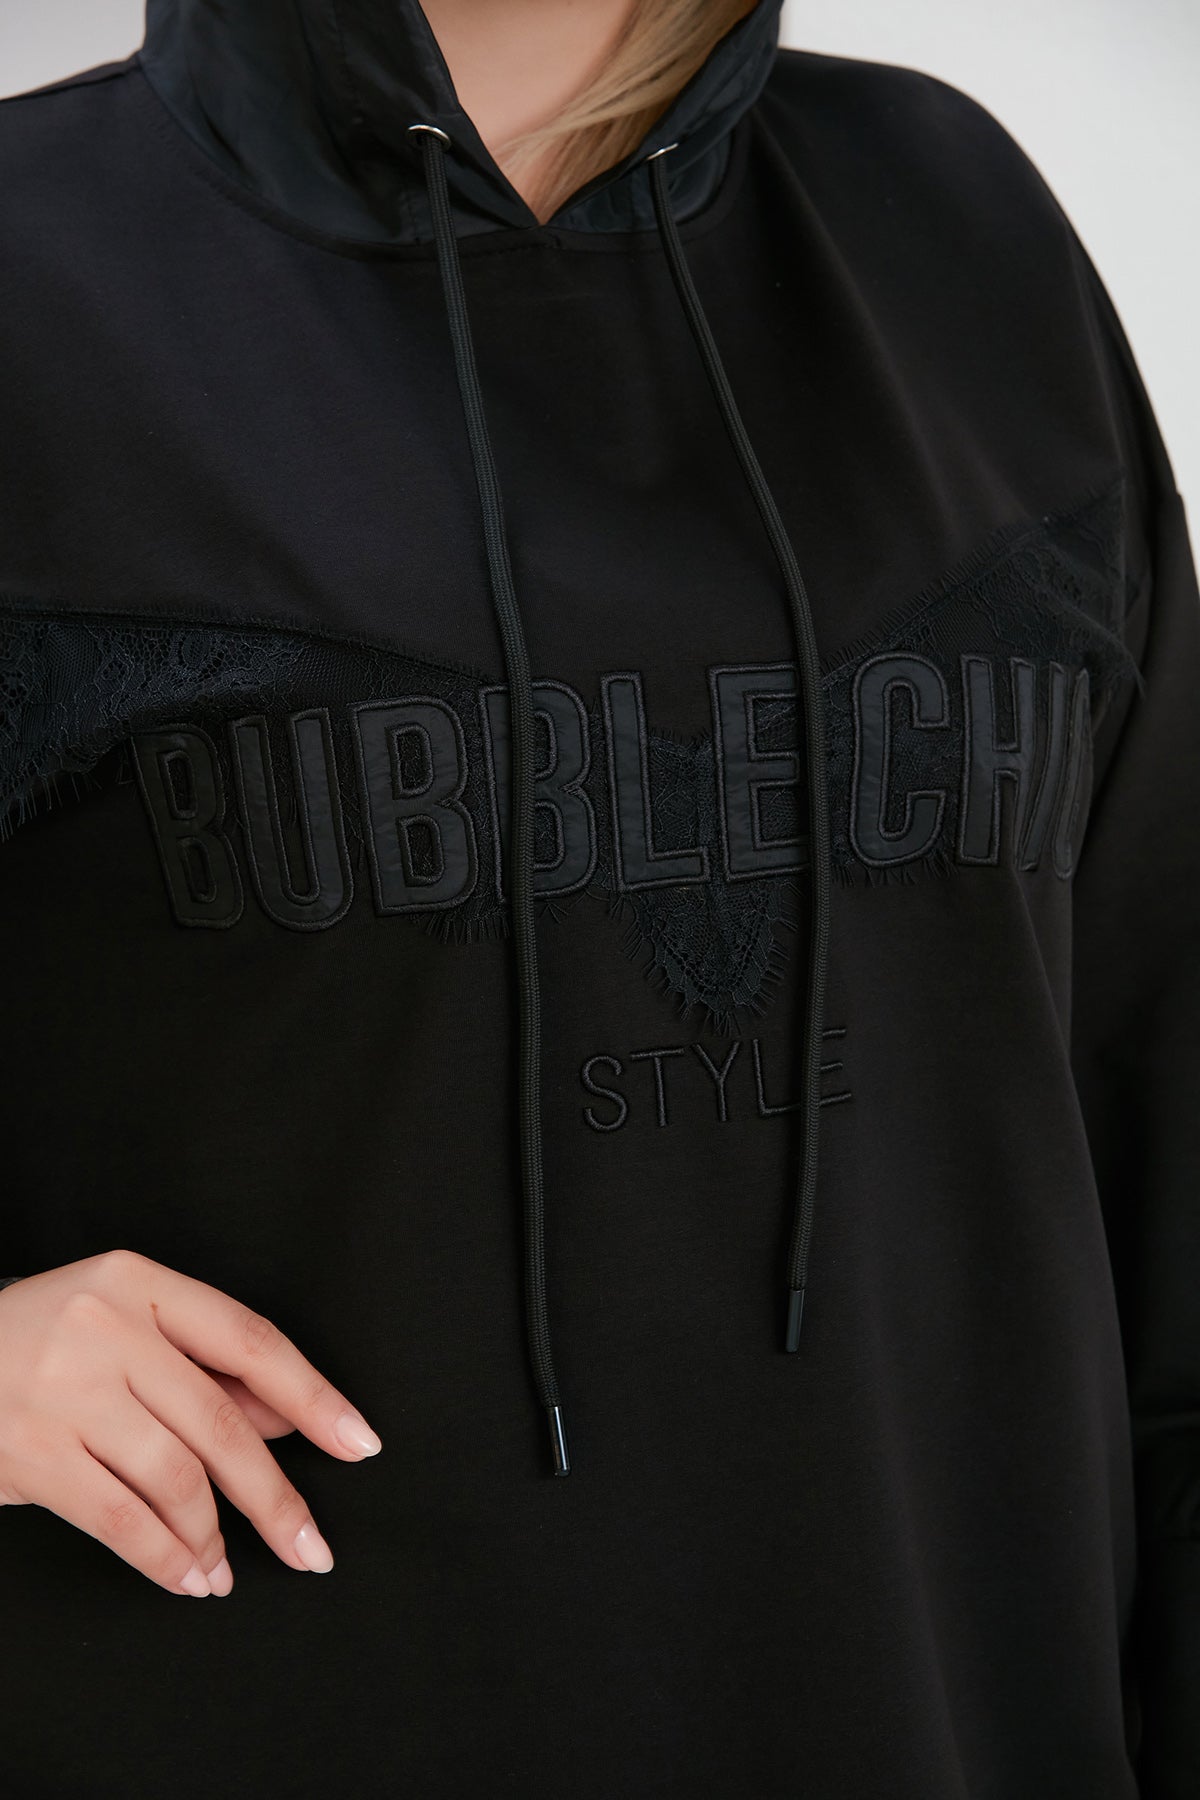 Μπλούζα με δαντέλα Bubble Chic σε μεγάλα μεγέθη- Μαύρο